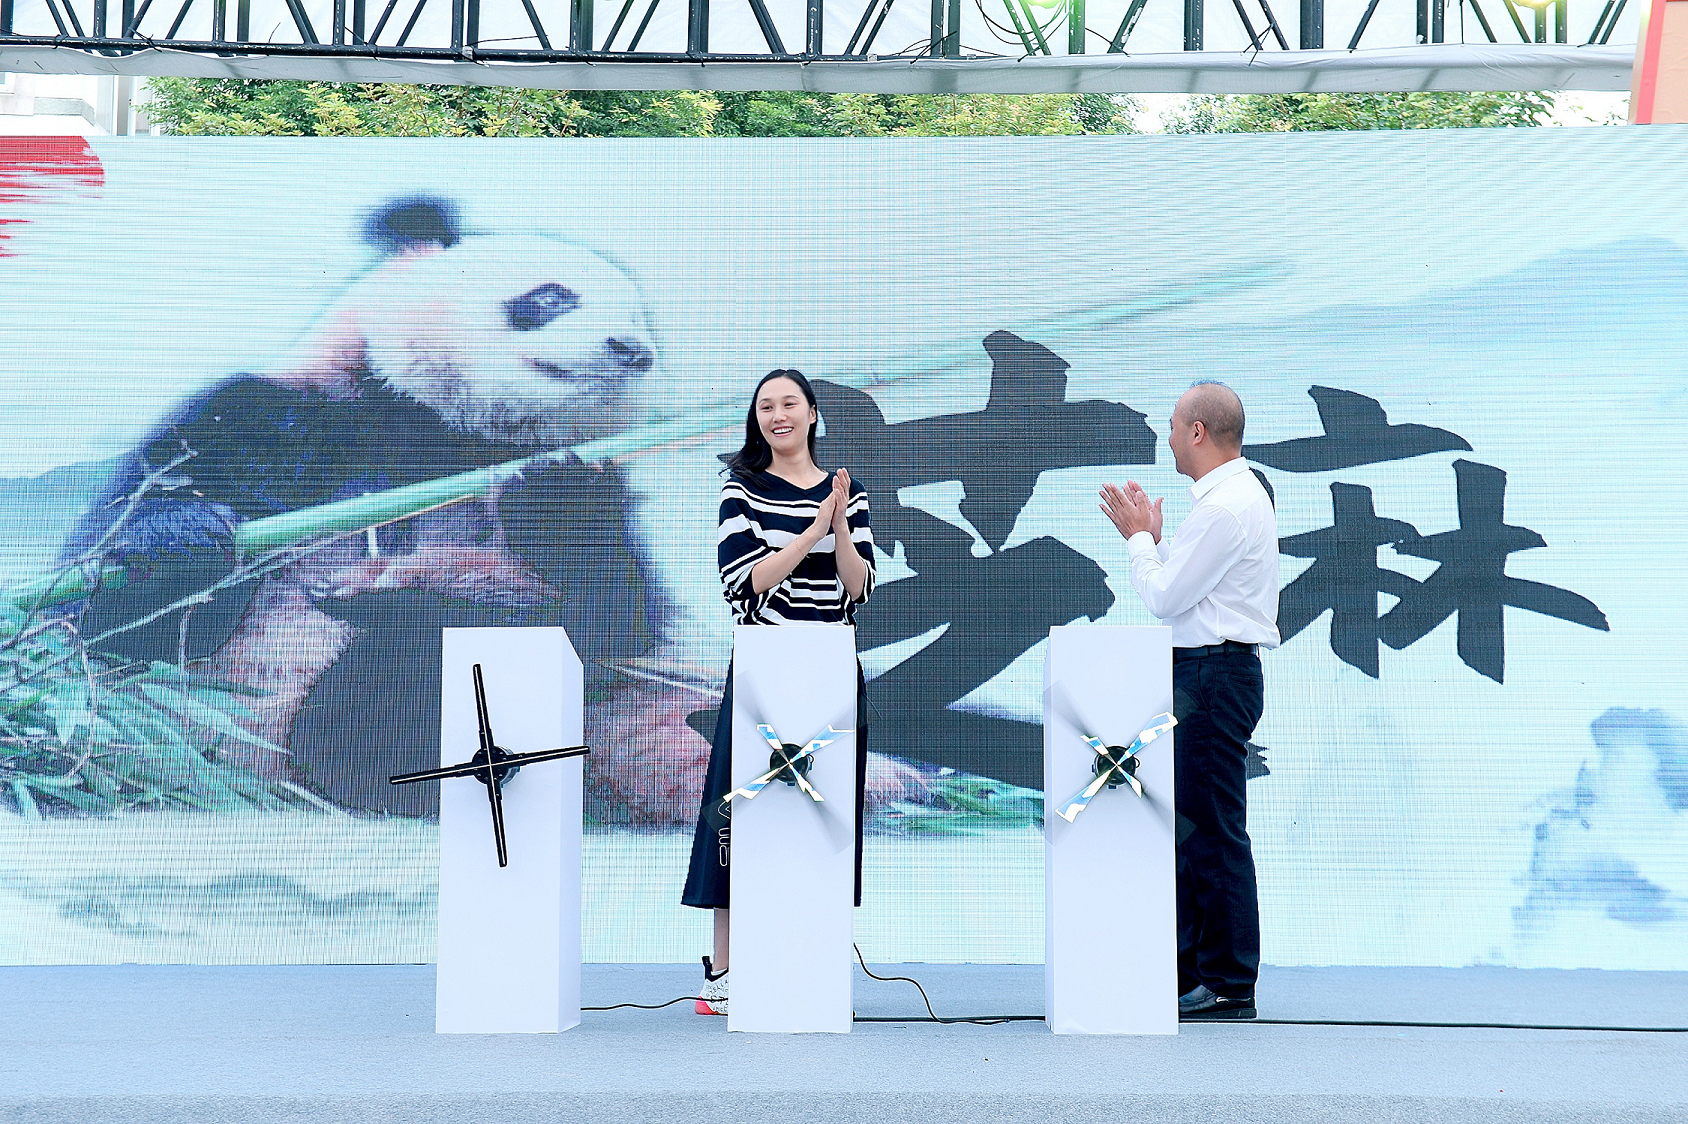 Panda Zhi Ma was selected to be the real Chengdu 2021 mascot ©Chengdu 2021